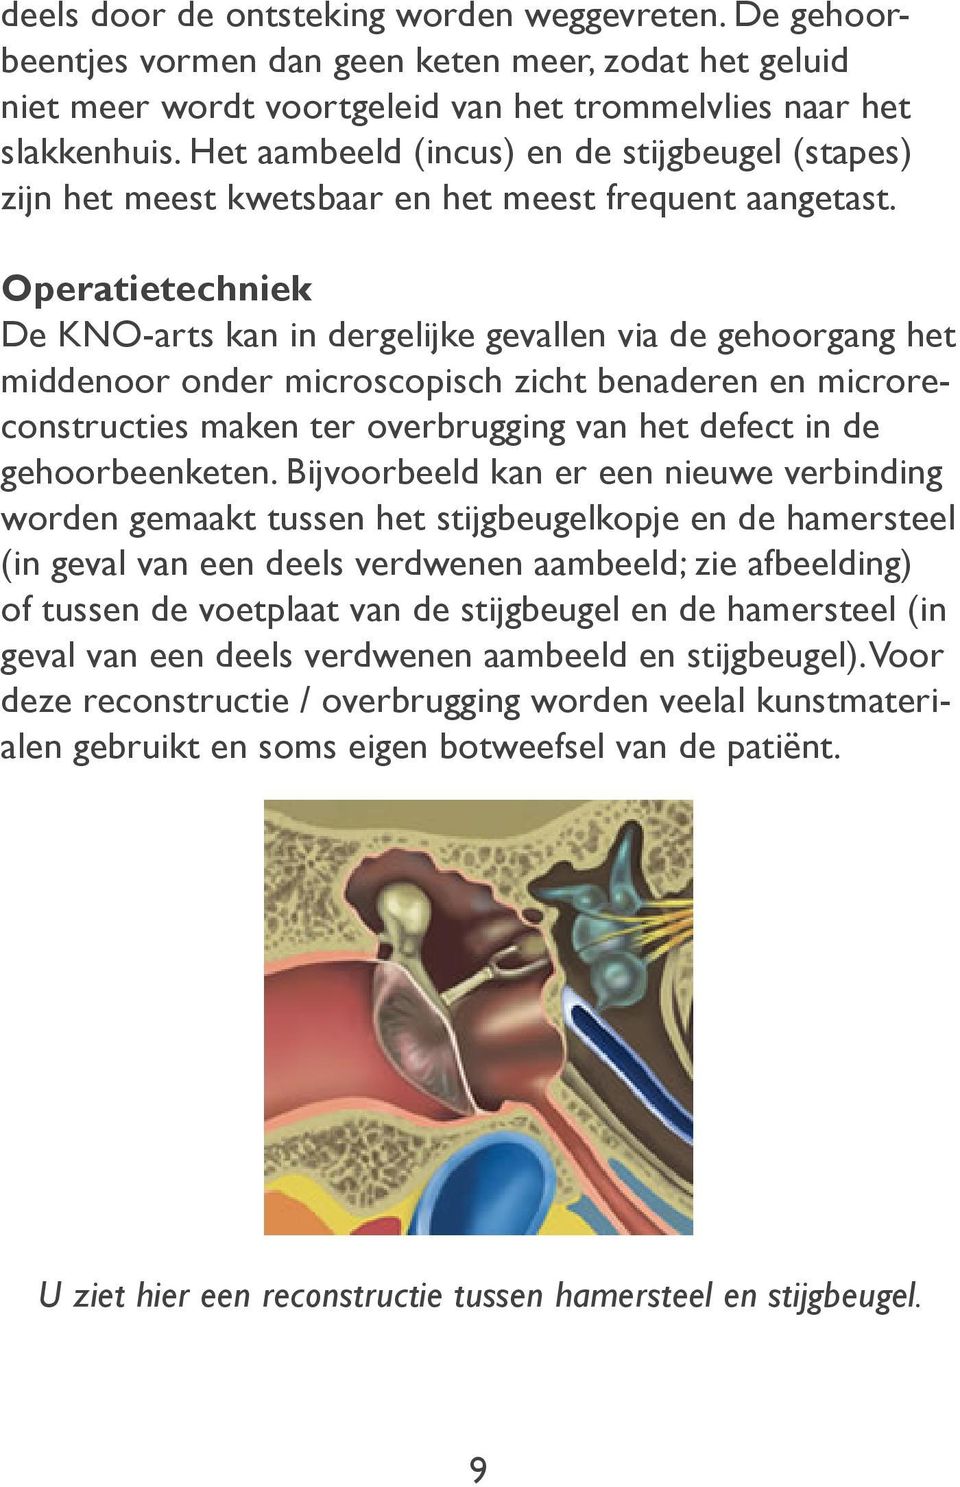 Operatietechniek De KNO-arts kan in dergelijke gevallen via de gehoorgang het middenoor onder microscopisch zicht benaderen en microreconstructies maken ter overbrugging van het defect in de